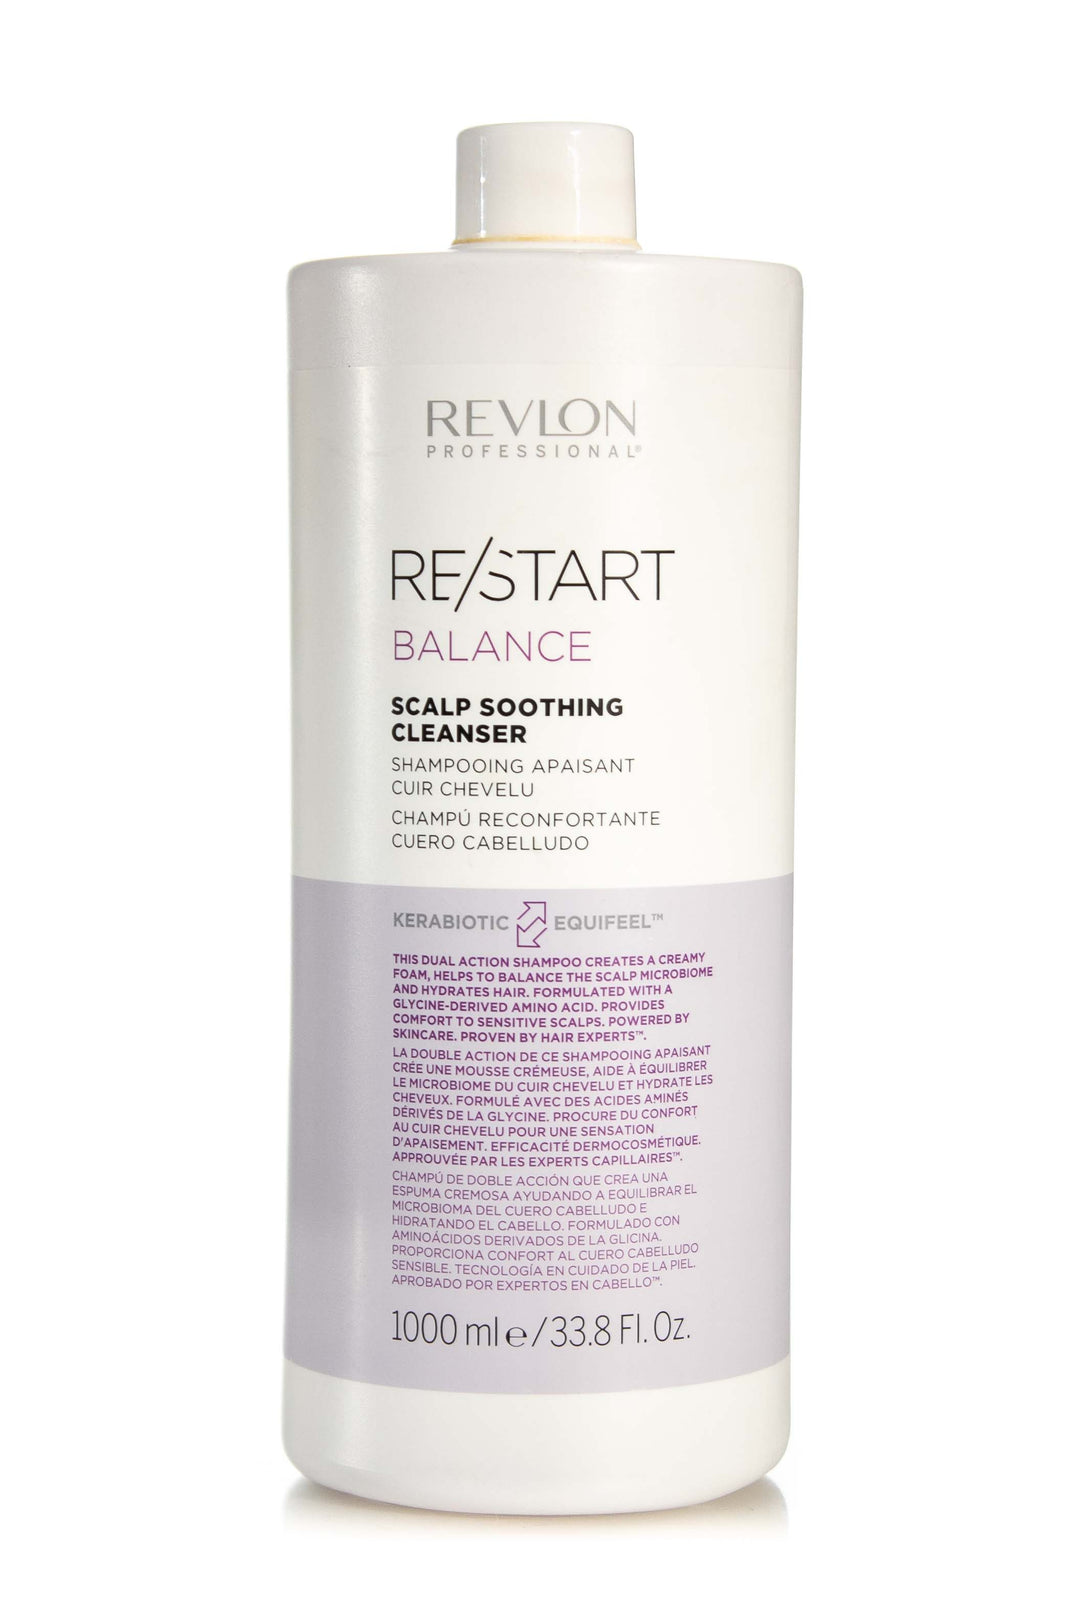 REVLON RESTART Care – Balance Hair Various Salon Sizes | Cleanser Scalp Soothing